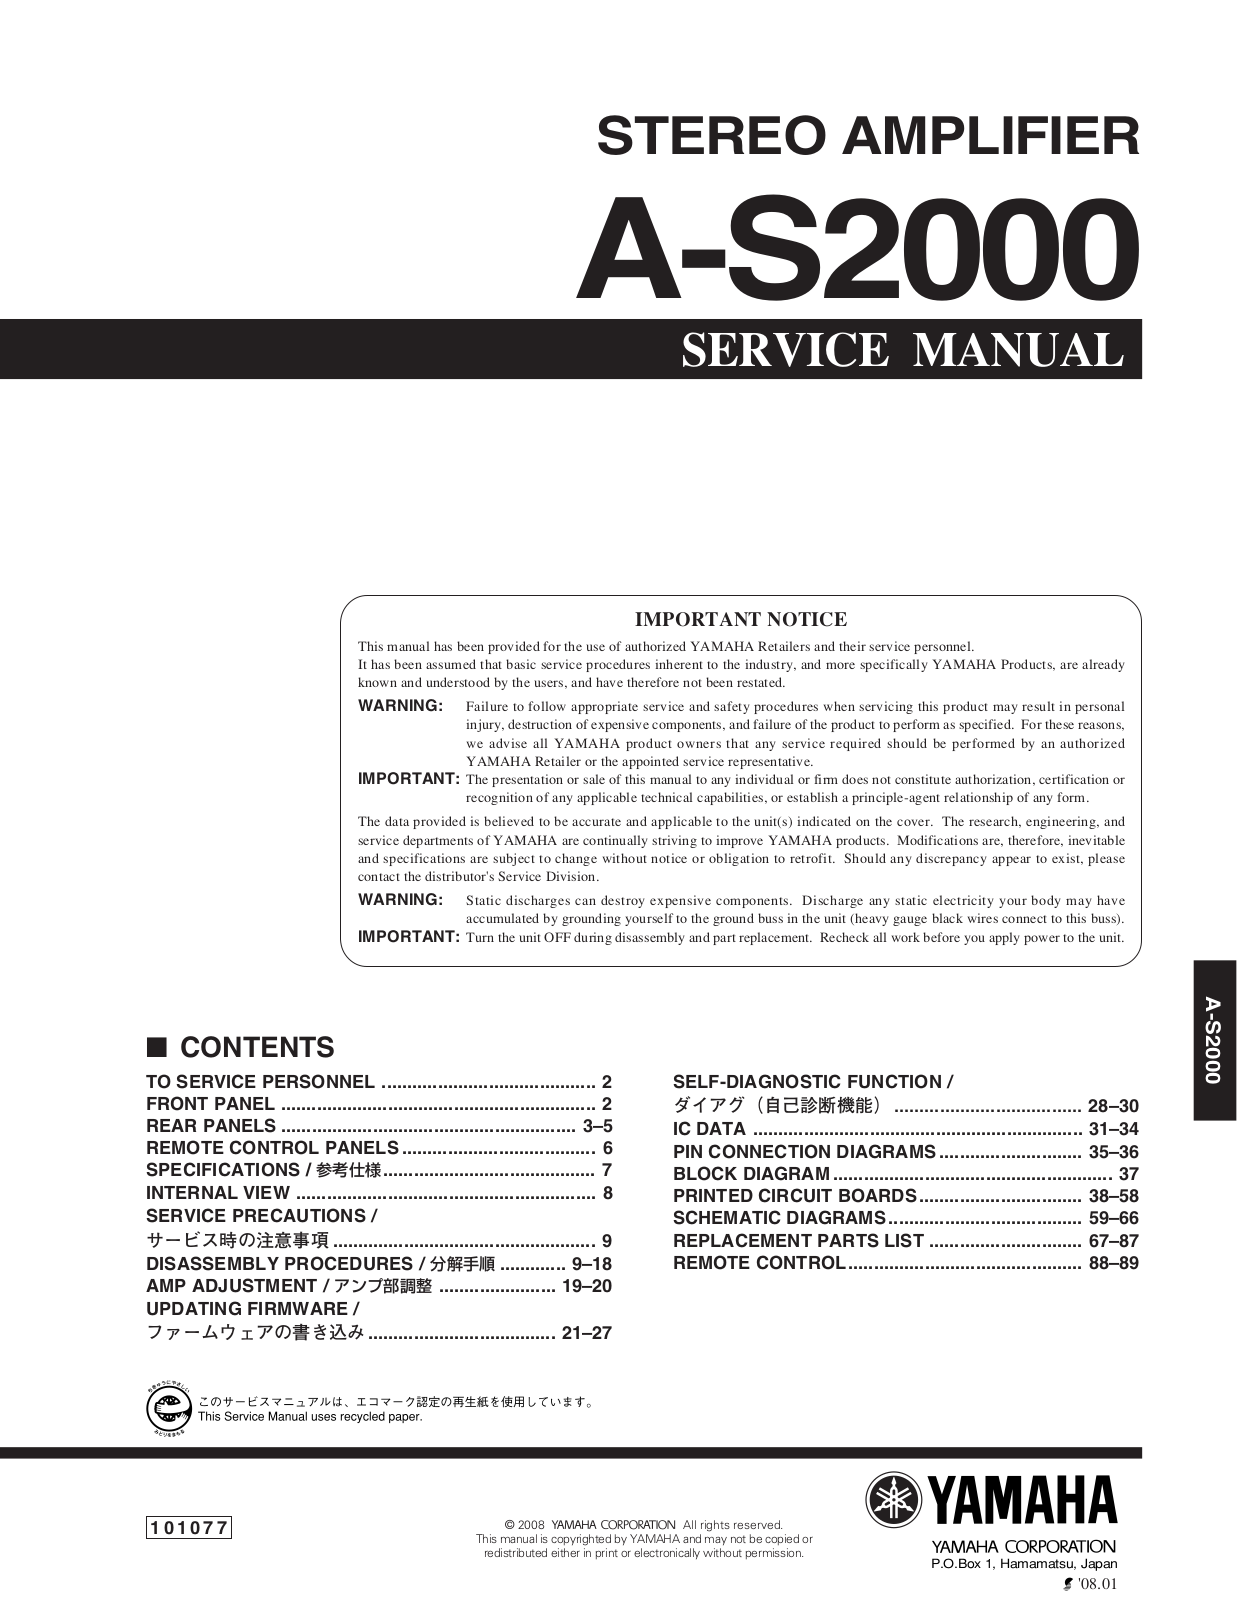 Yamaha AS-2000 Service Manual